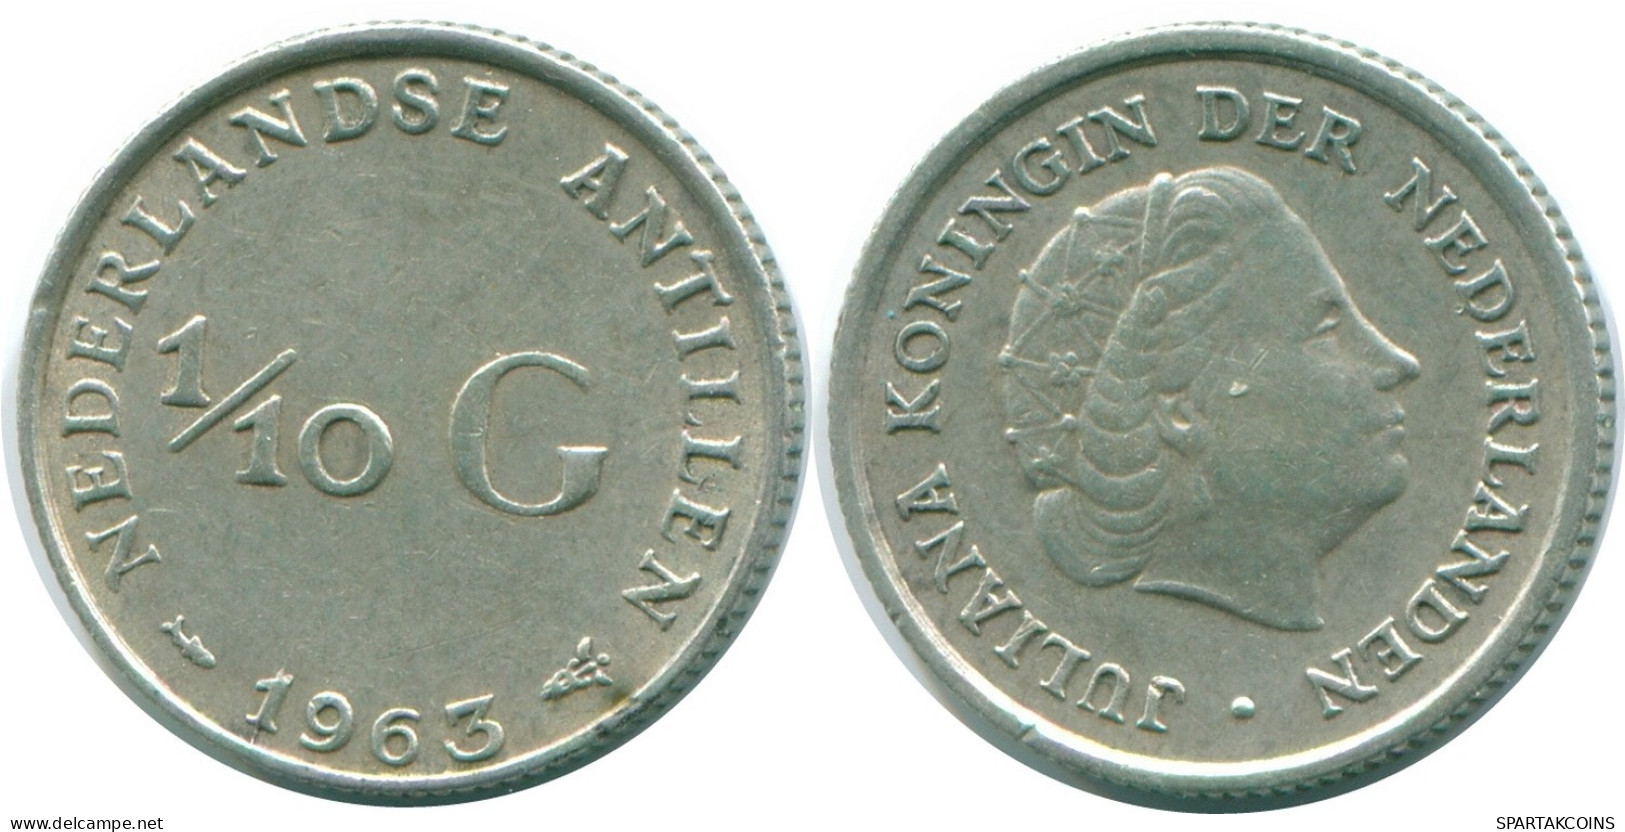 1/10 GULDEN 1963 NIEDERLÄNDISCHE ANTILLEN SILBER Koloniale Münze #NL12525.3.D.A - Antillas Neerlandesas